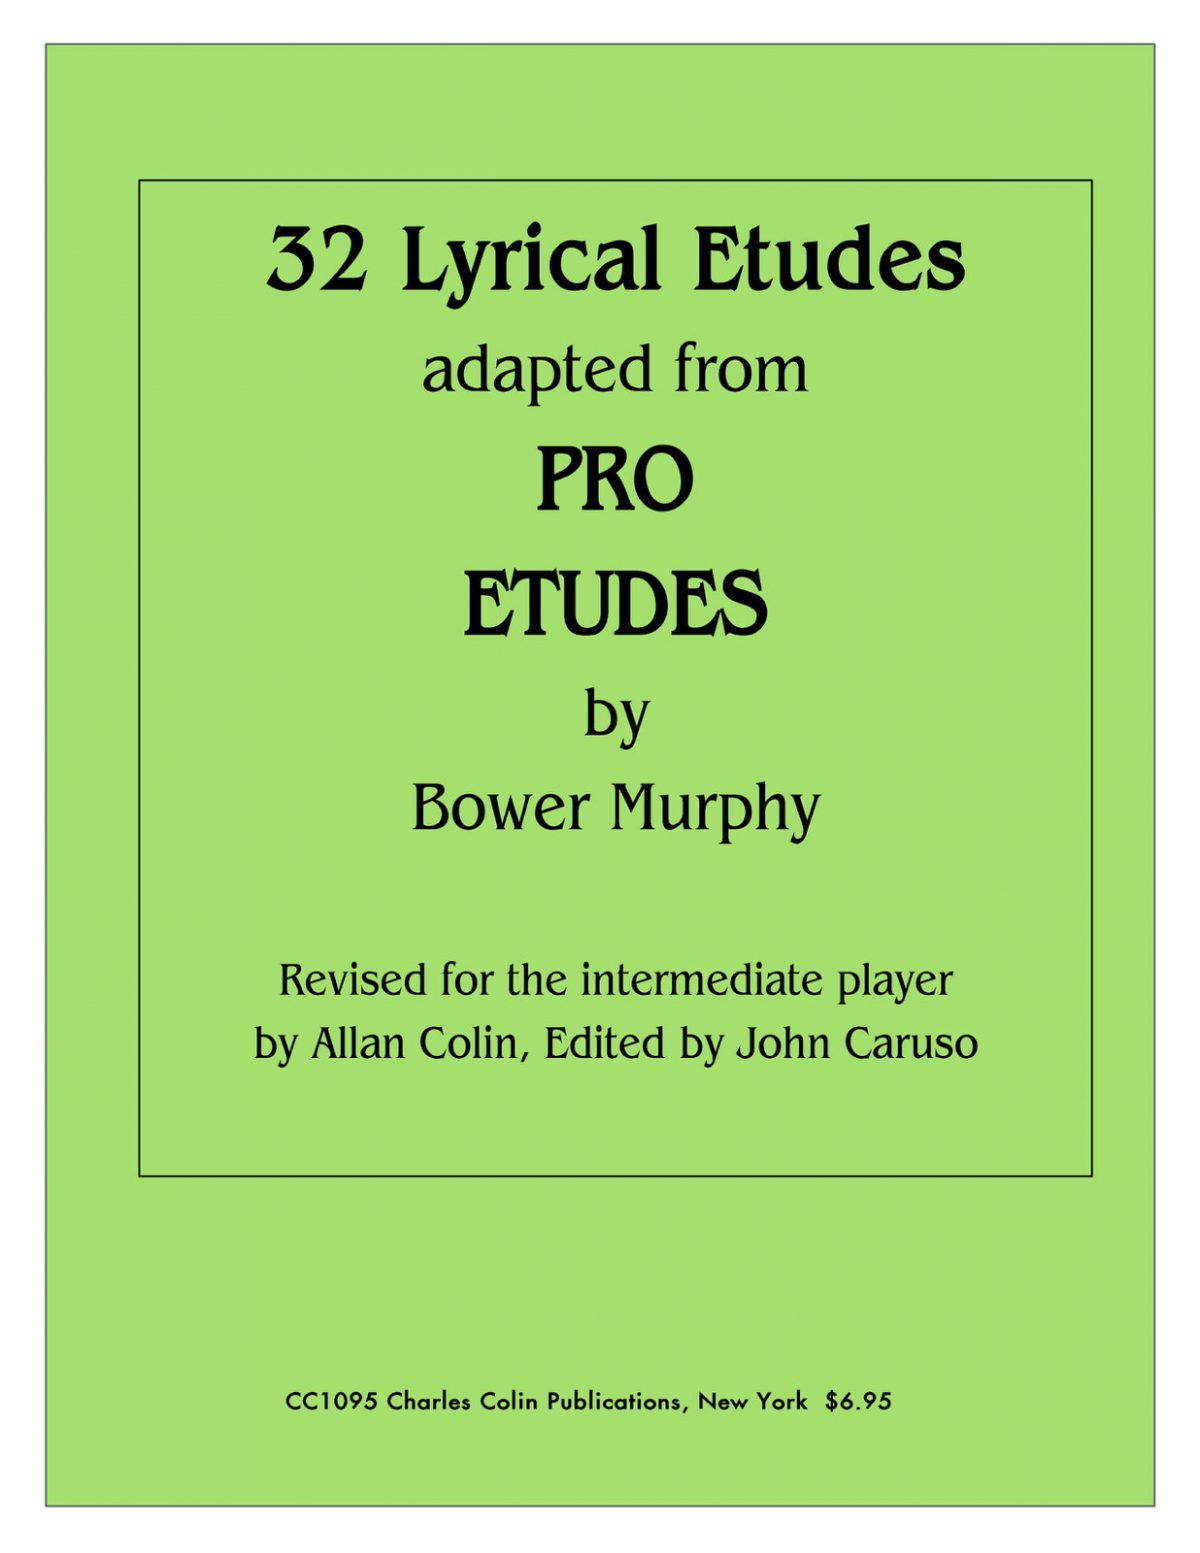 32 Lyrical Etudes (Adapted From Pro Etudes)